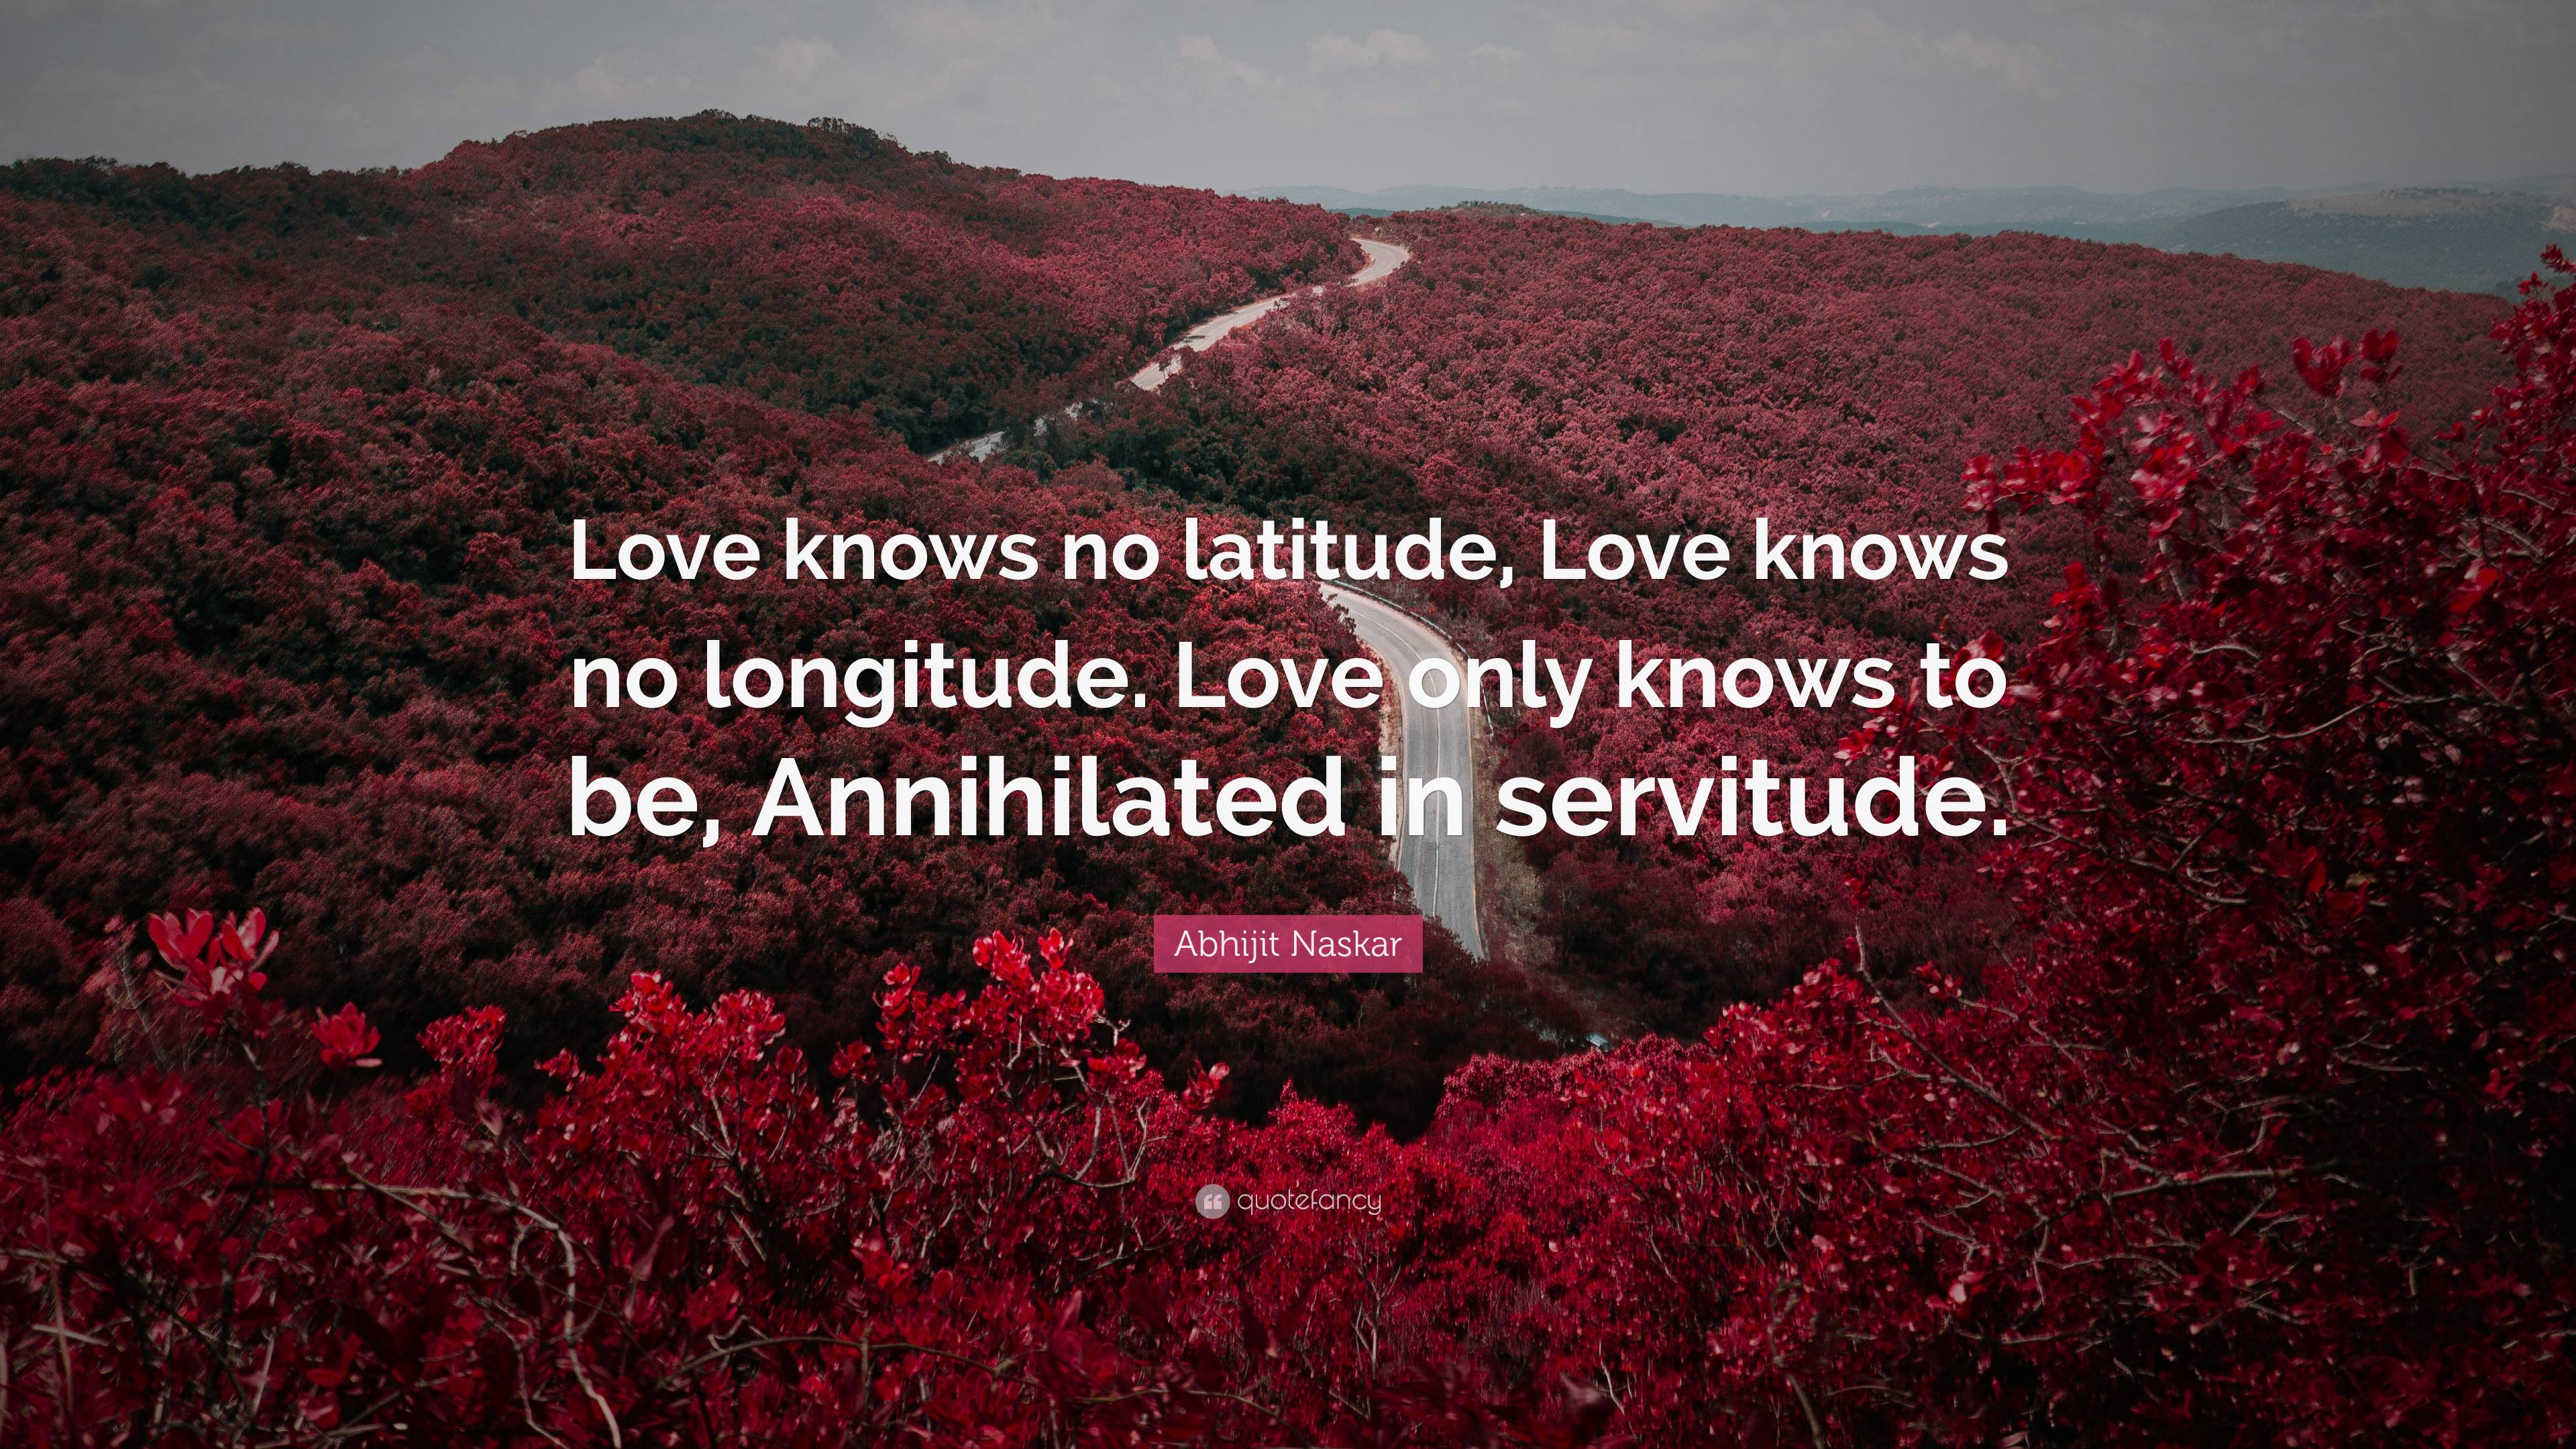 Abhijit Naskar Quote: “Love knows no latitude, Love knows no longitude ...